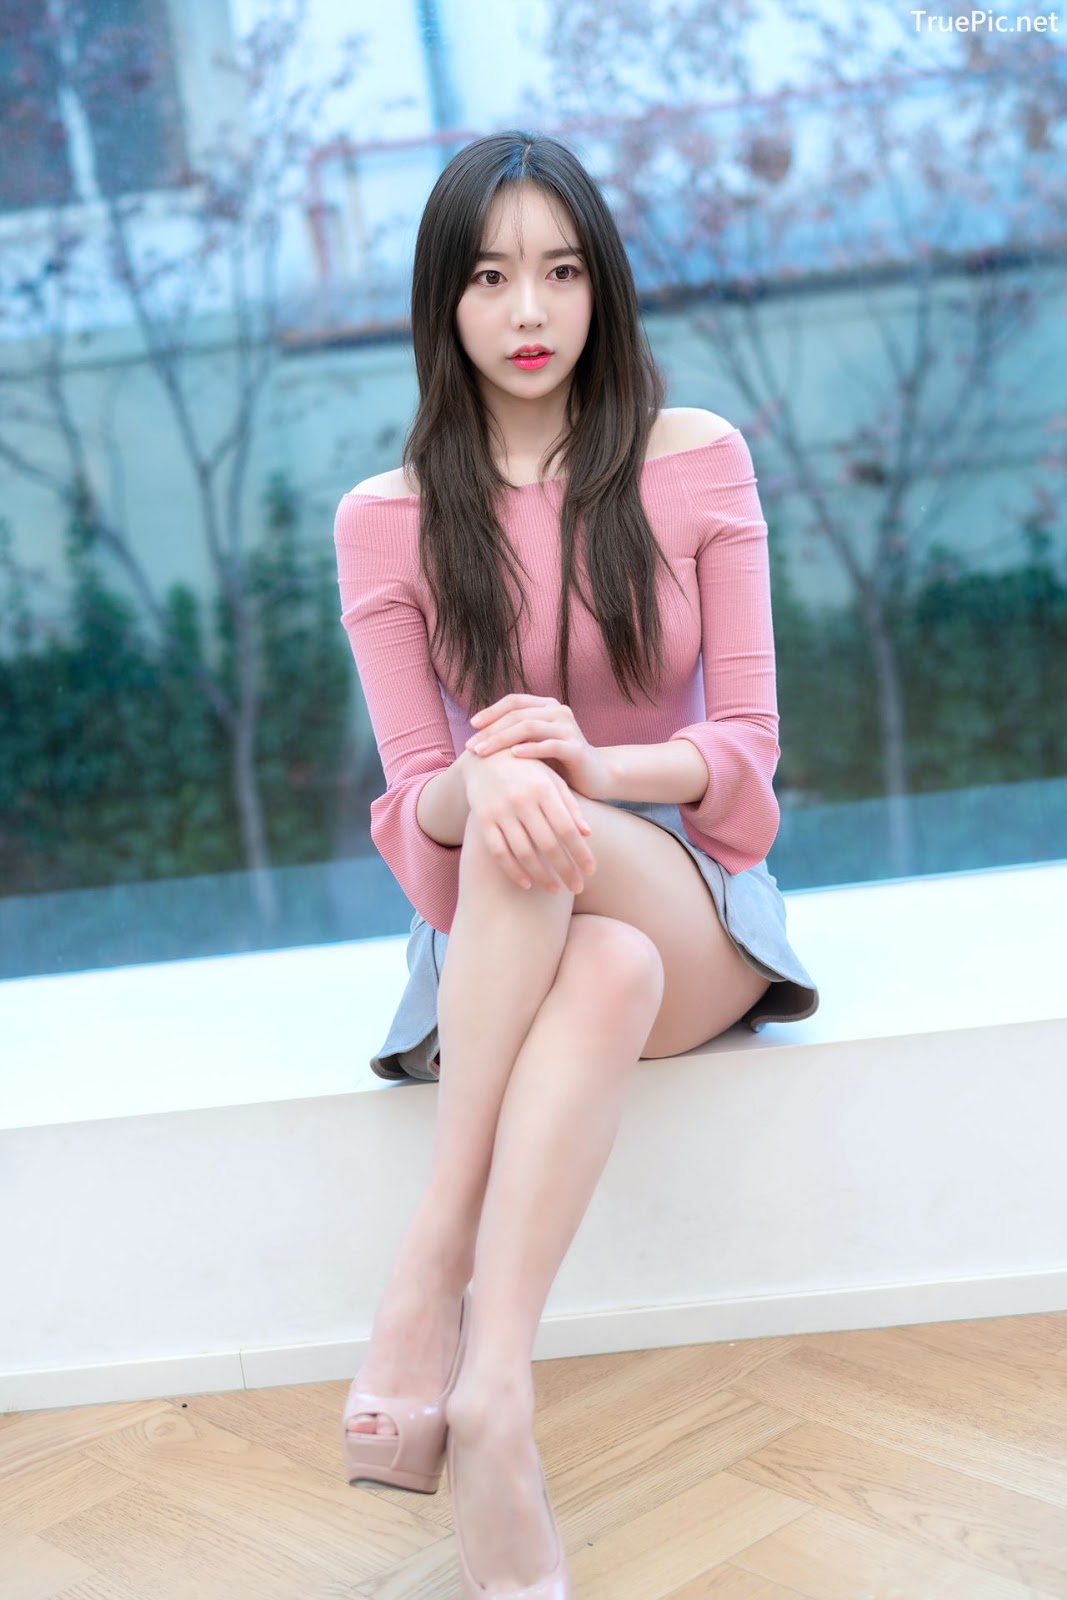 Image-Korean-Hot-Model-Go-Eun-Yang-Indoor-Photoshoot-Collection-TruePic.net- Picture-78